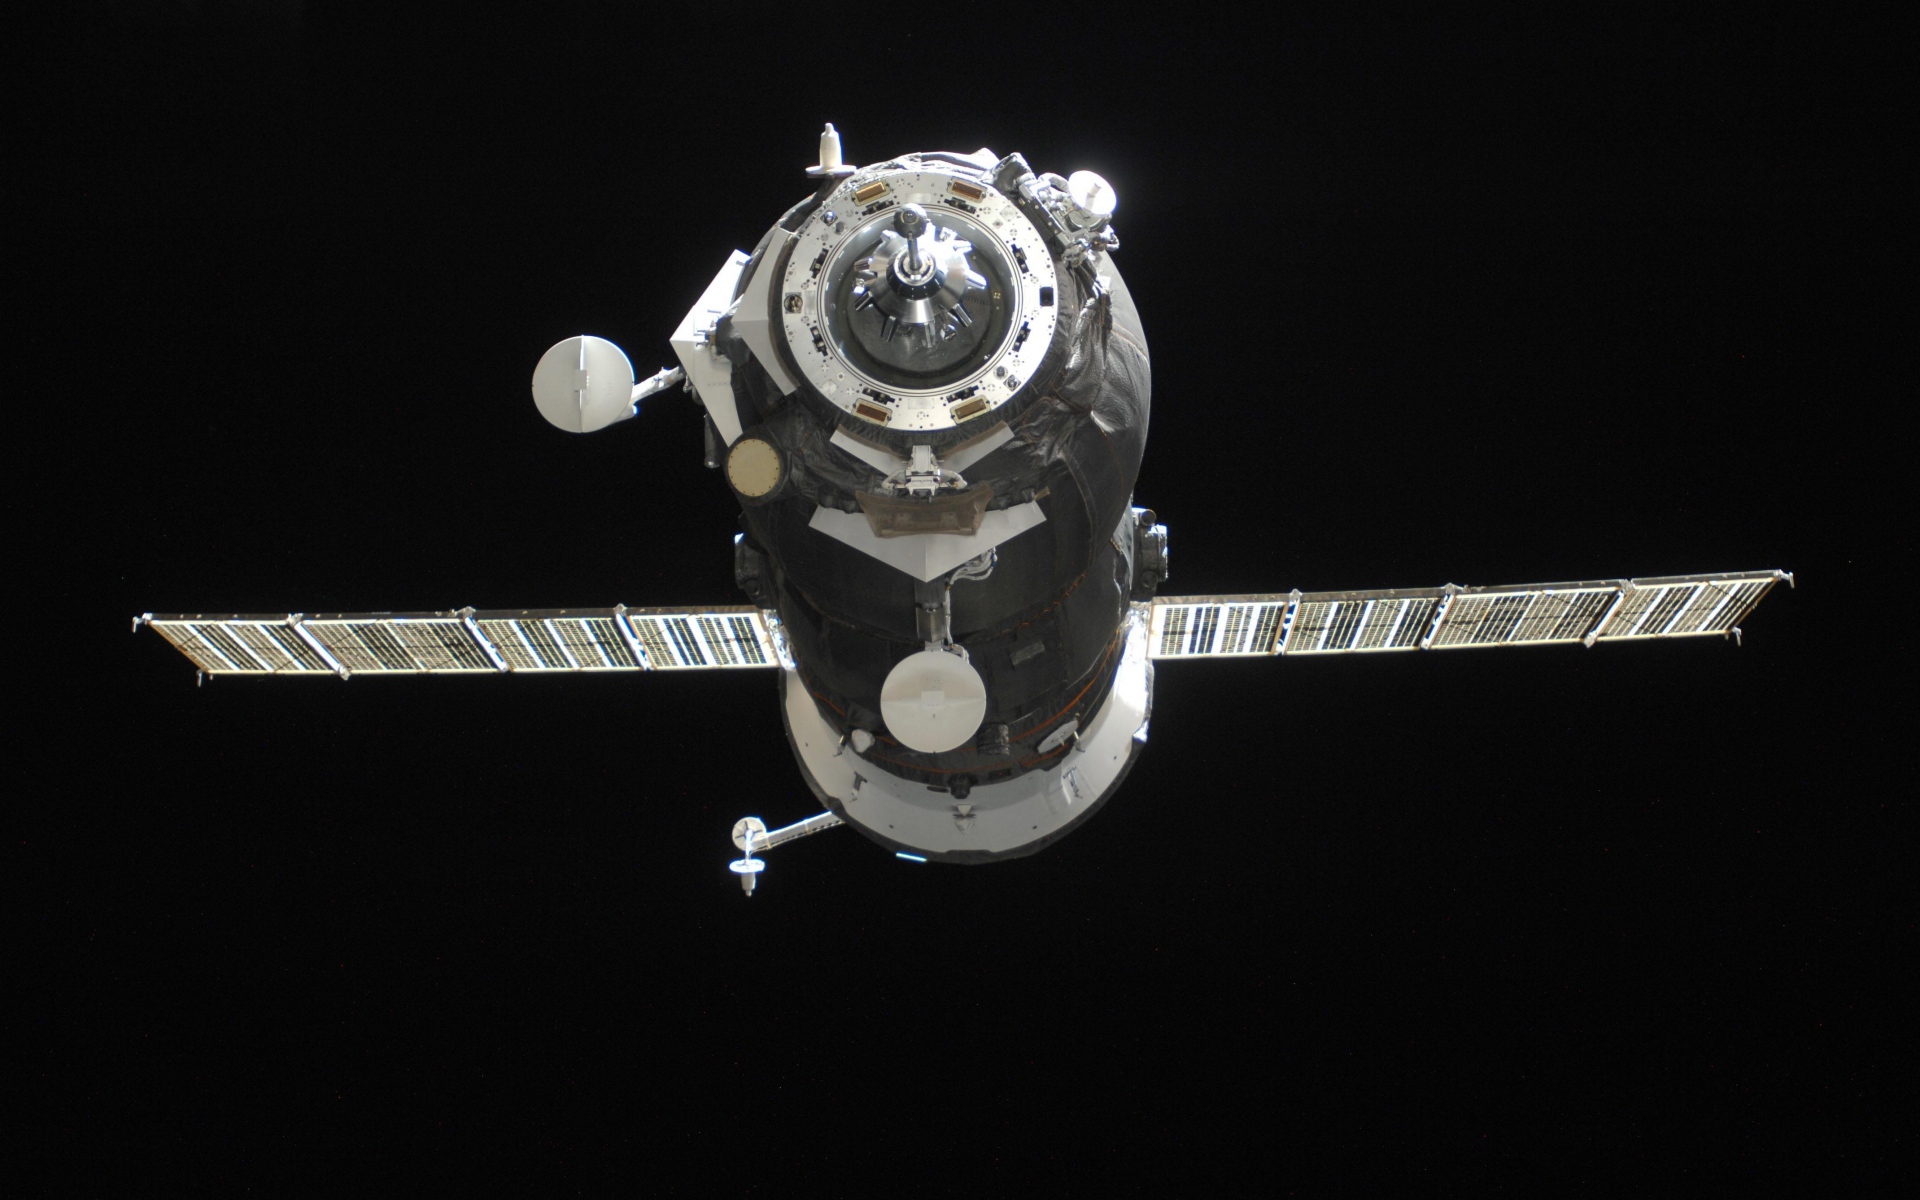 Картинки Грузовой космический корабль, космос, полет фото и обои на рабочий стол